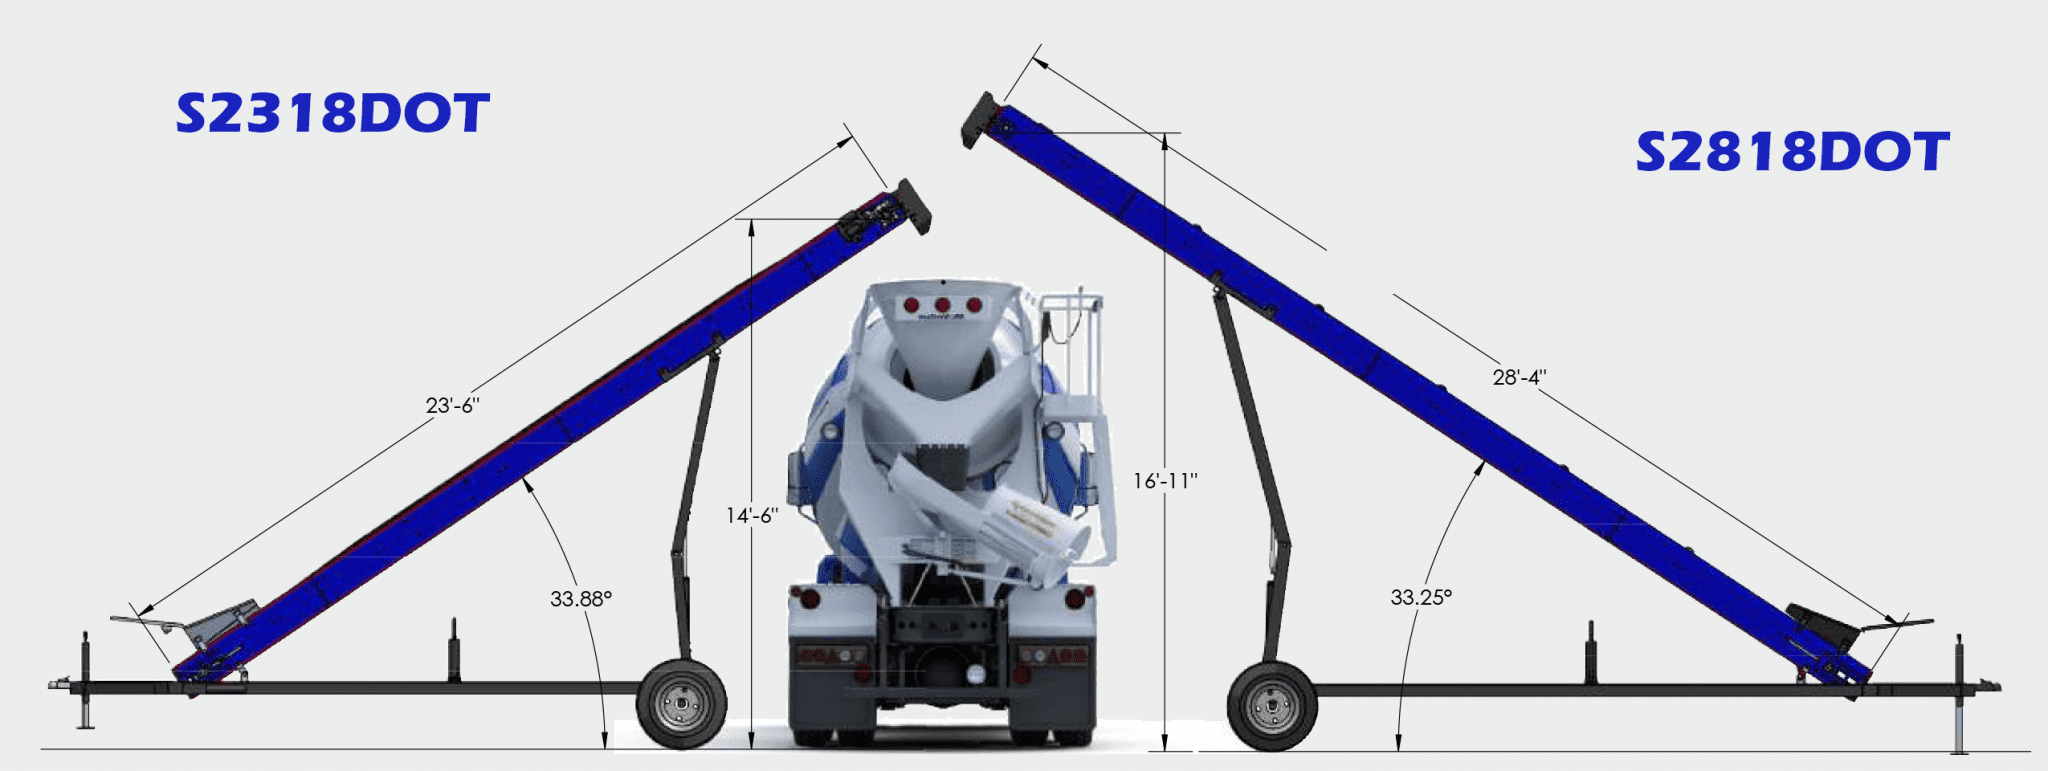 Mixer Truck Dimensions Blue 2048x771 1 23' Conveyor - Senya S2318